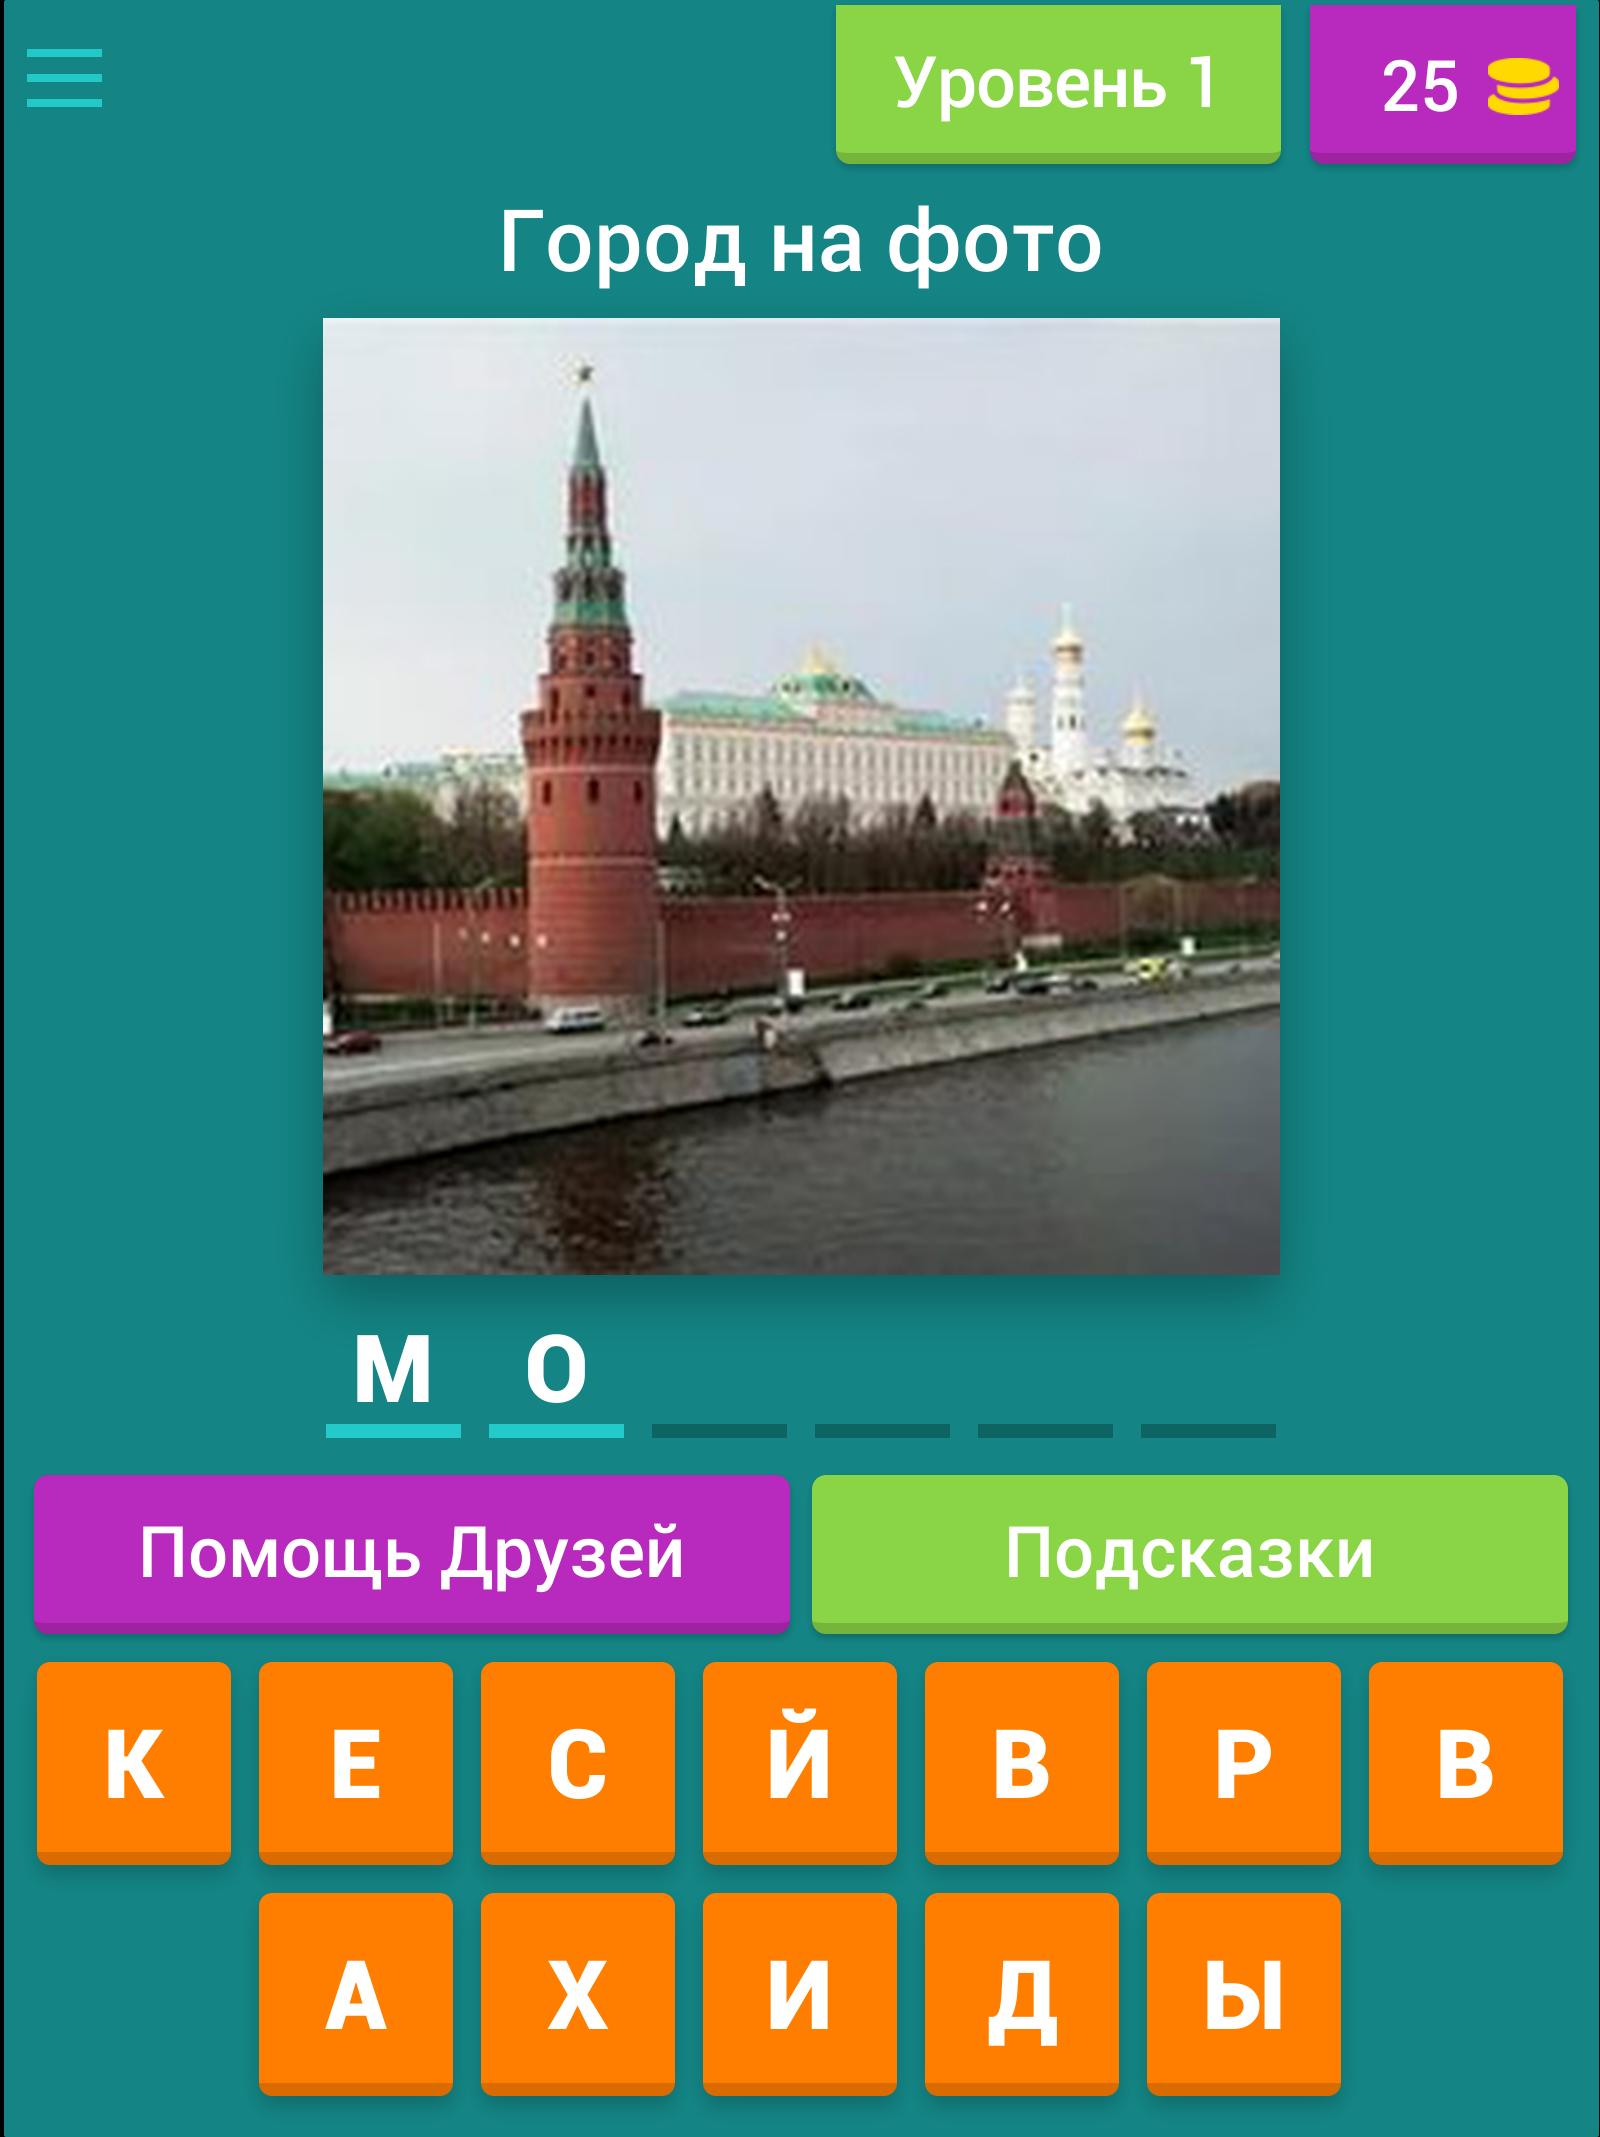 Угадай город россии